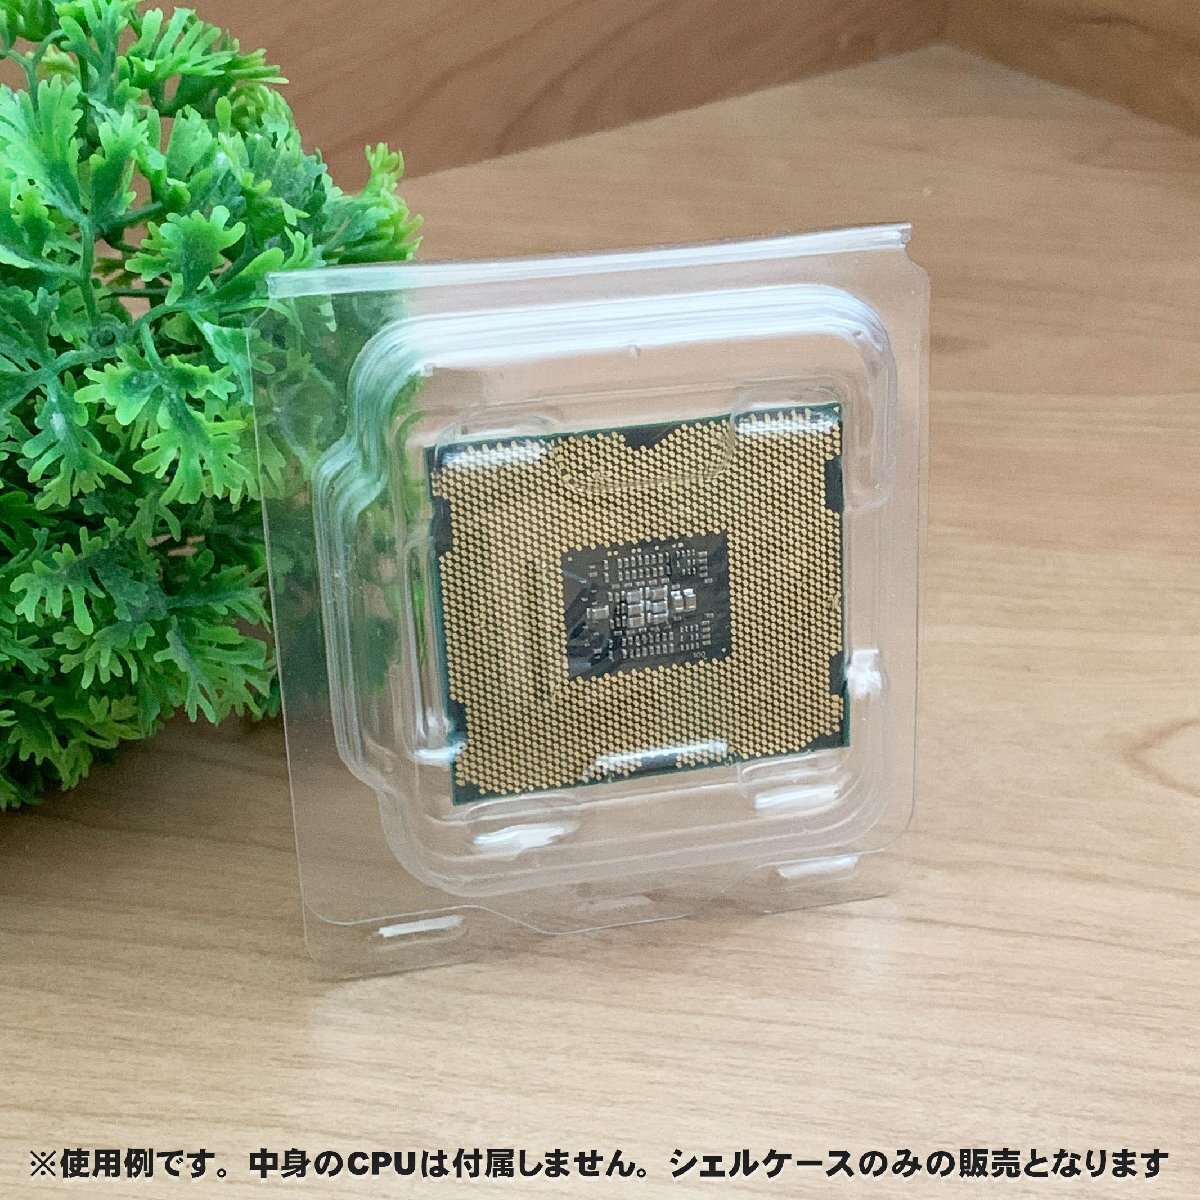 【 LGA2011 】CPU XEON シェルケース LGA 用 プラスチック 保管 収納ケース 5枚セット_画像7